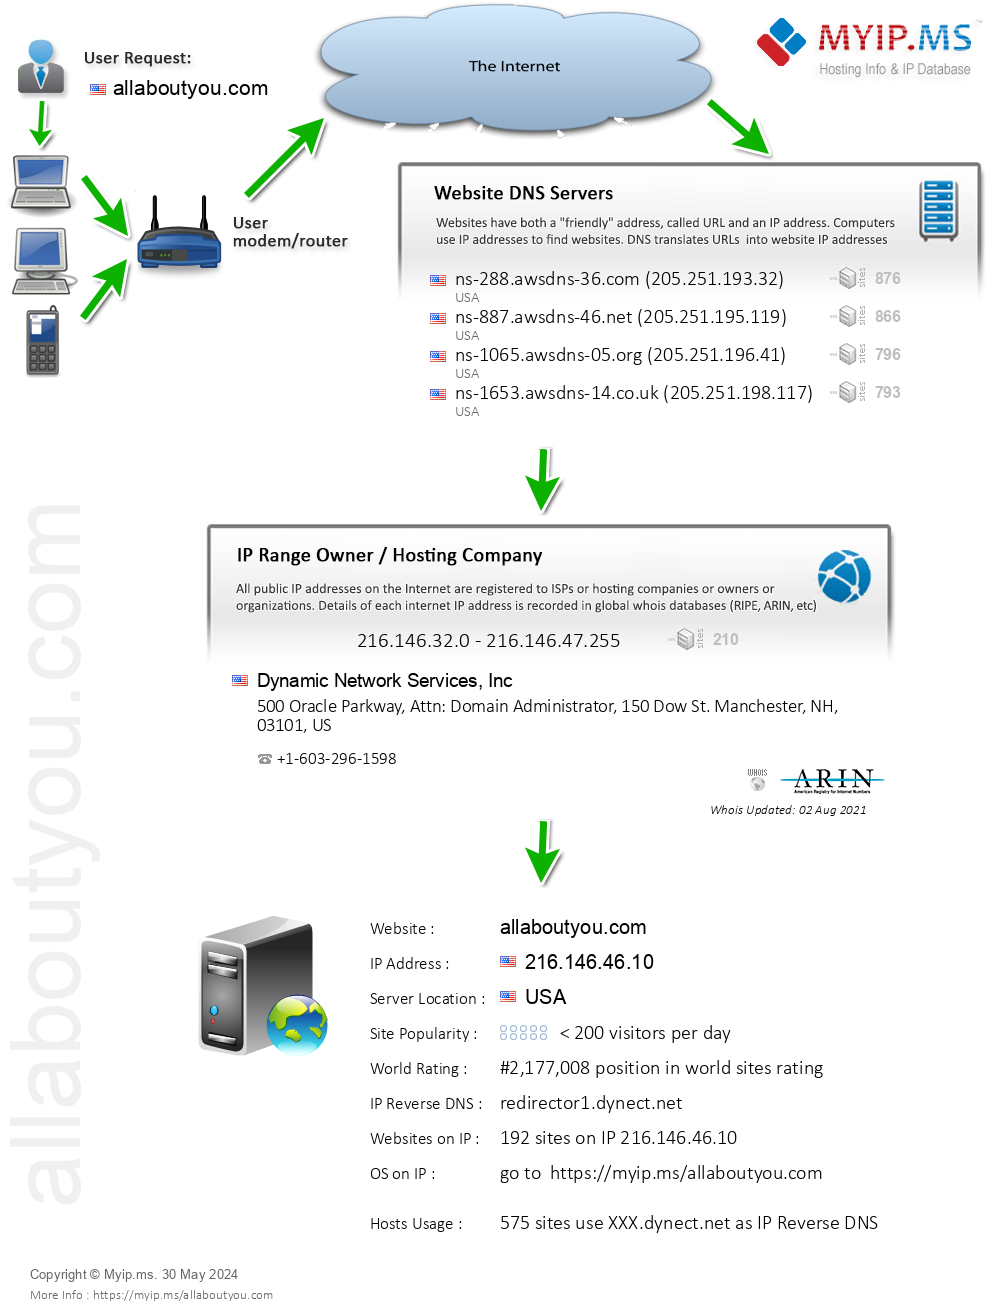 Allaboutyou.com - Website Hosting Visual IP Diagram